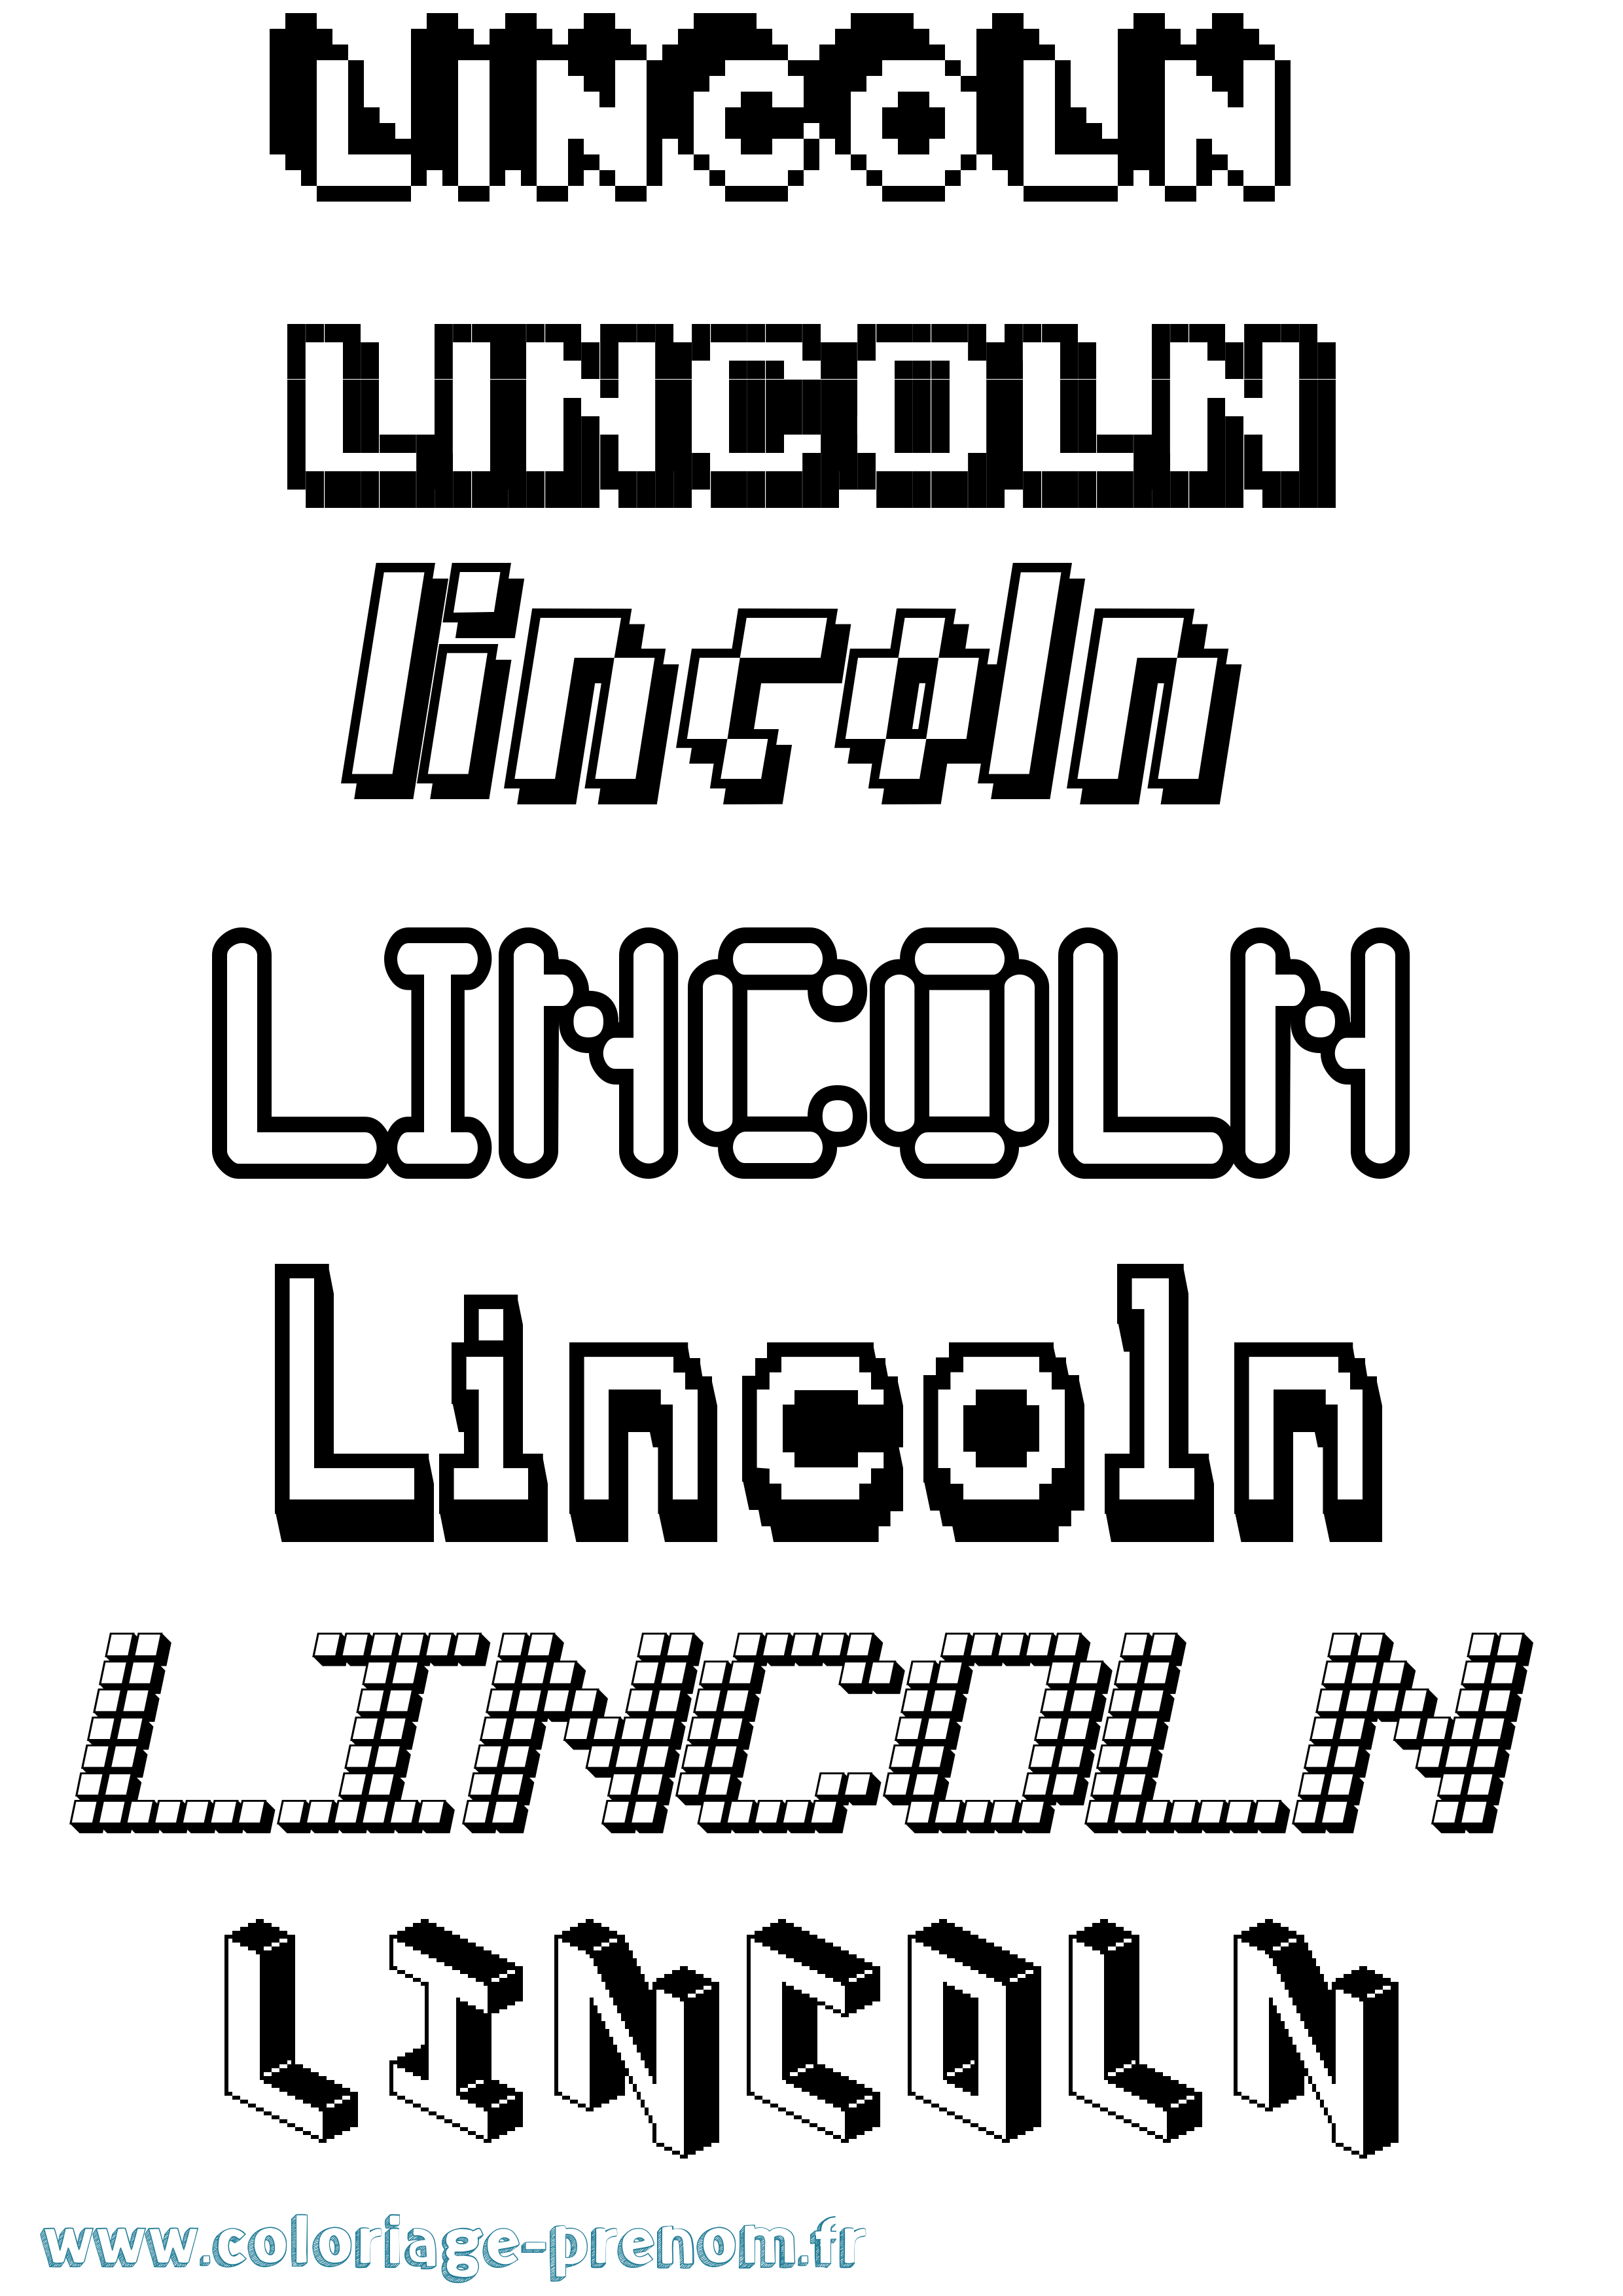 Coloriage prénom Lincoln Pixel